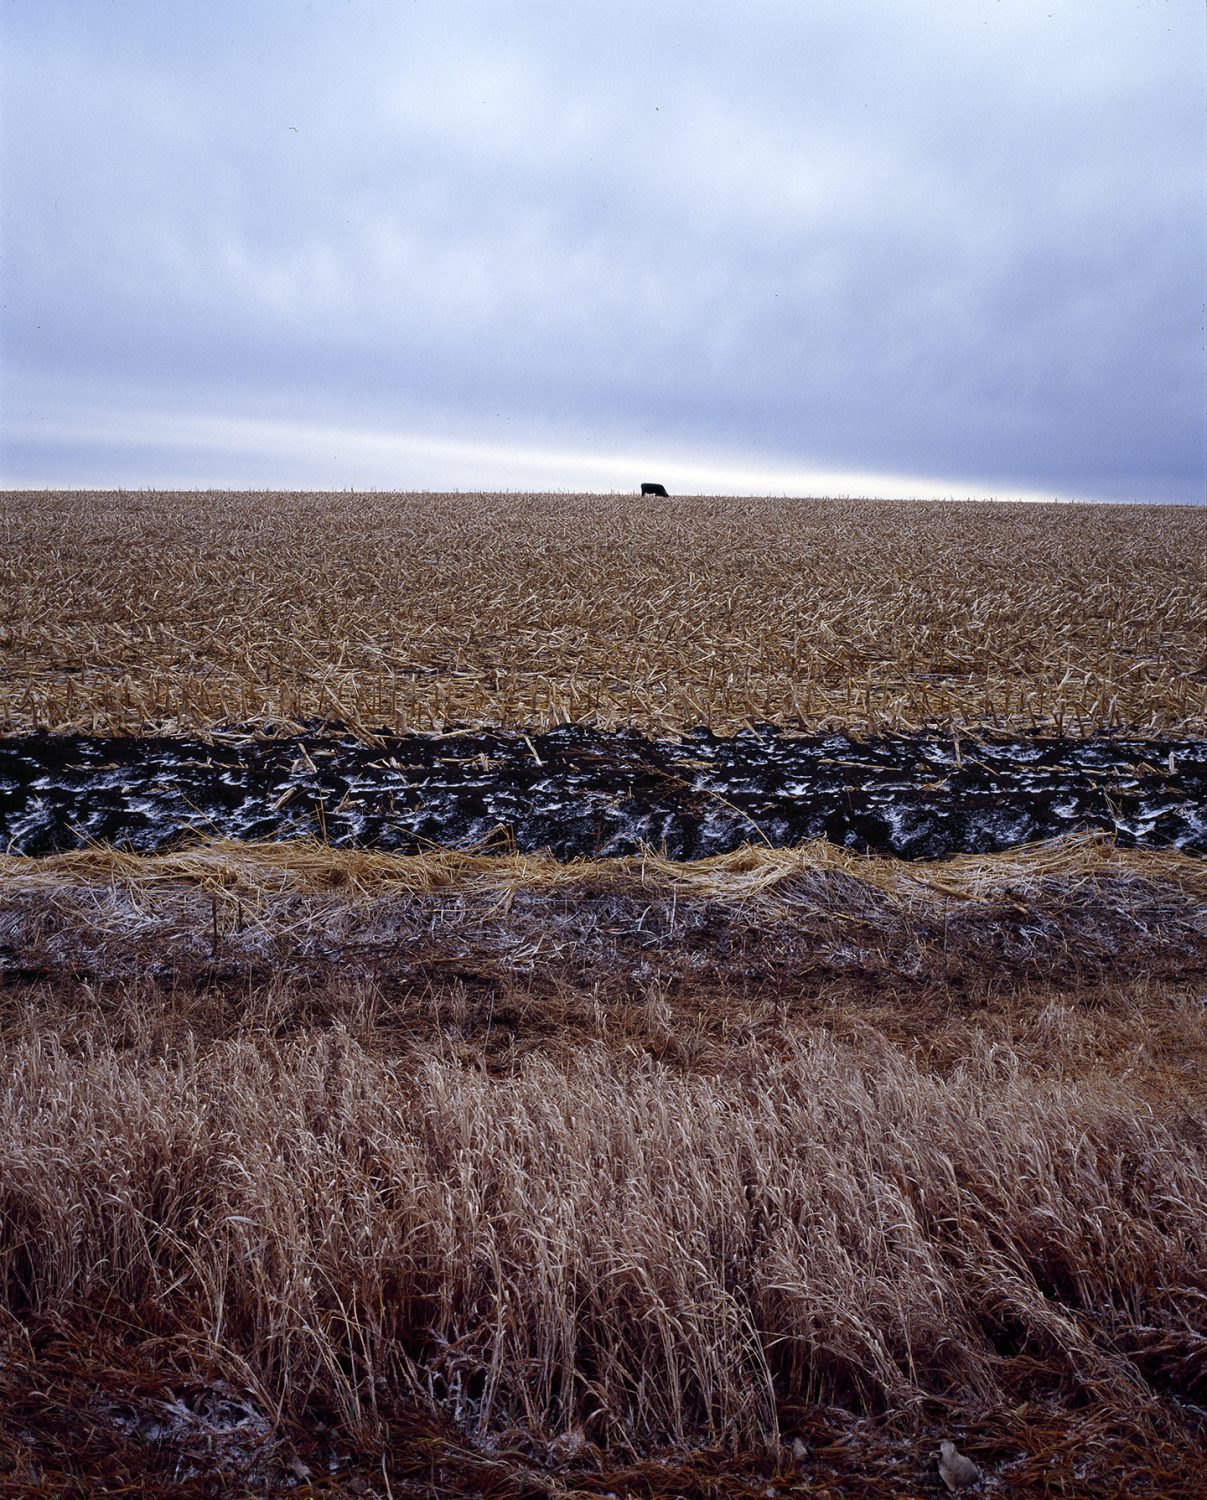 Cow in South Dakota Field